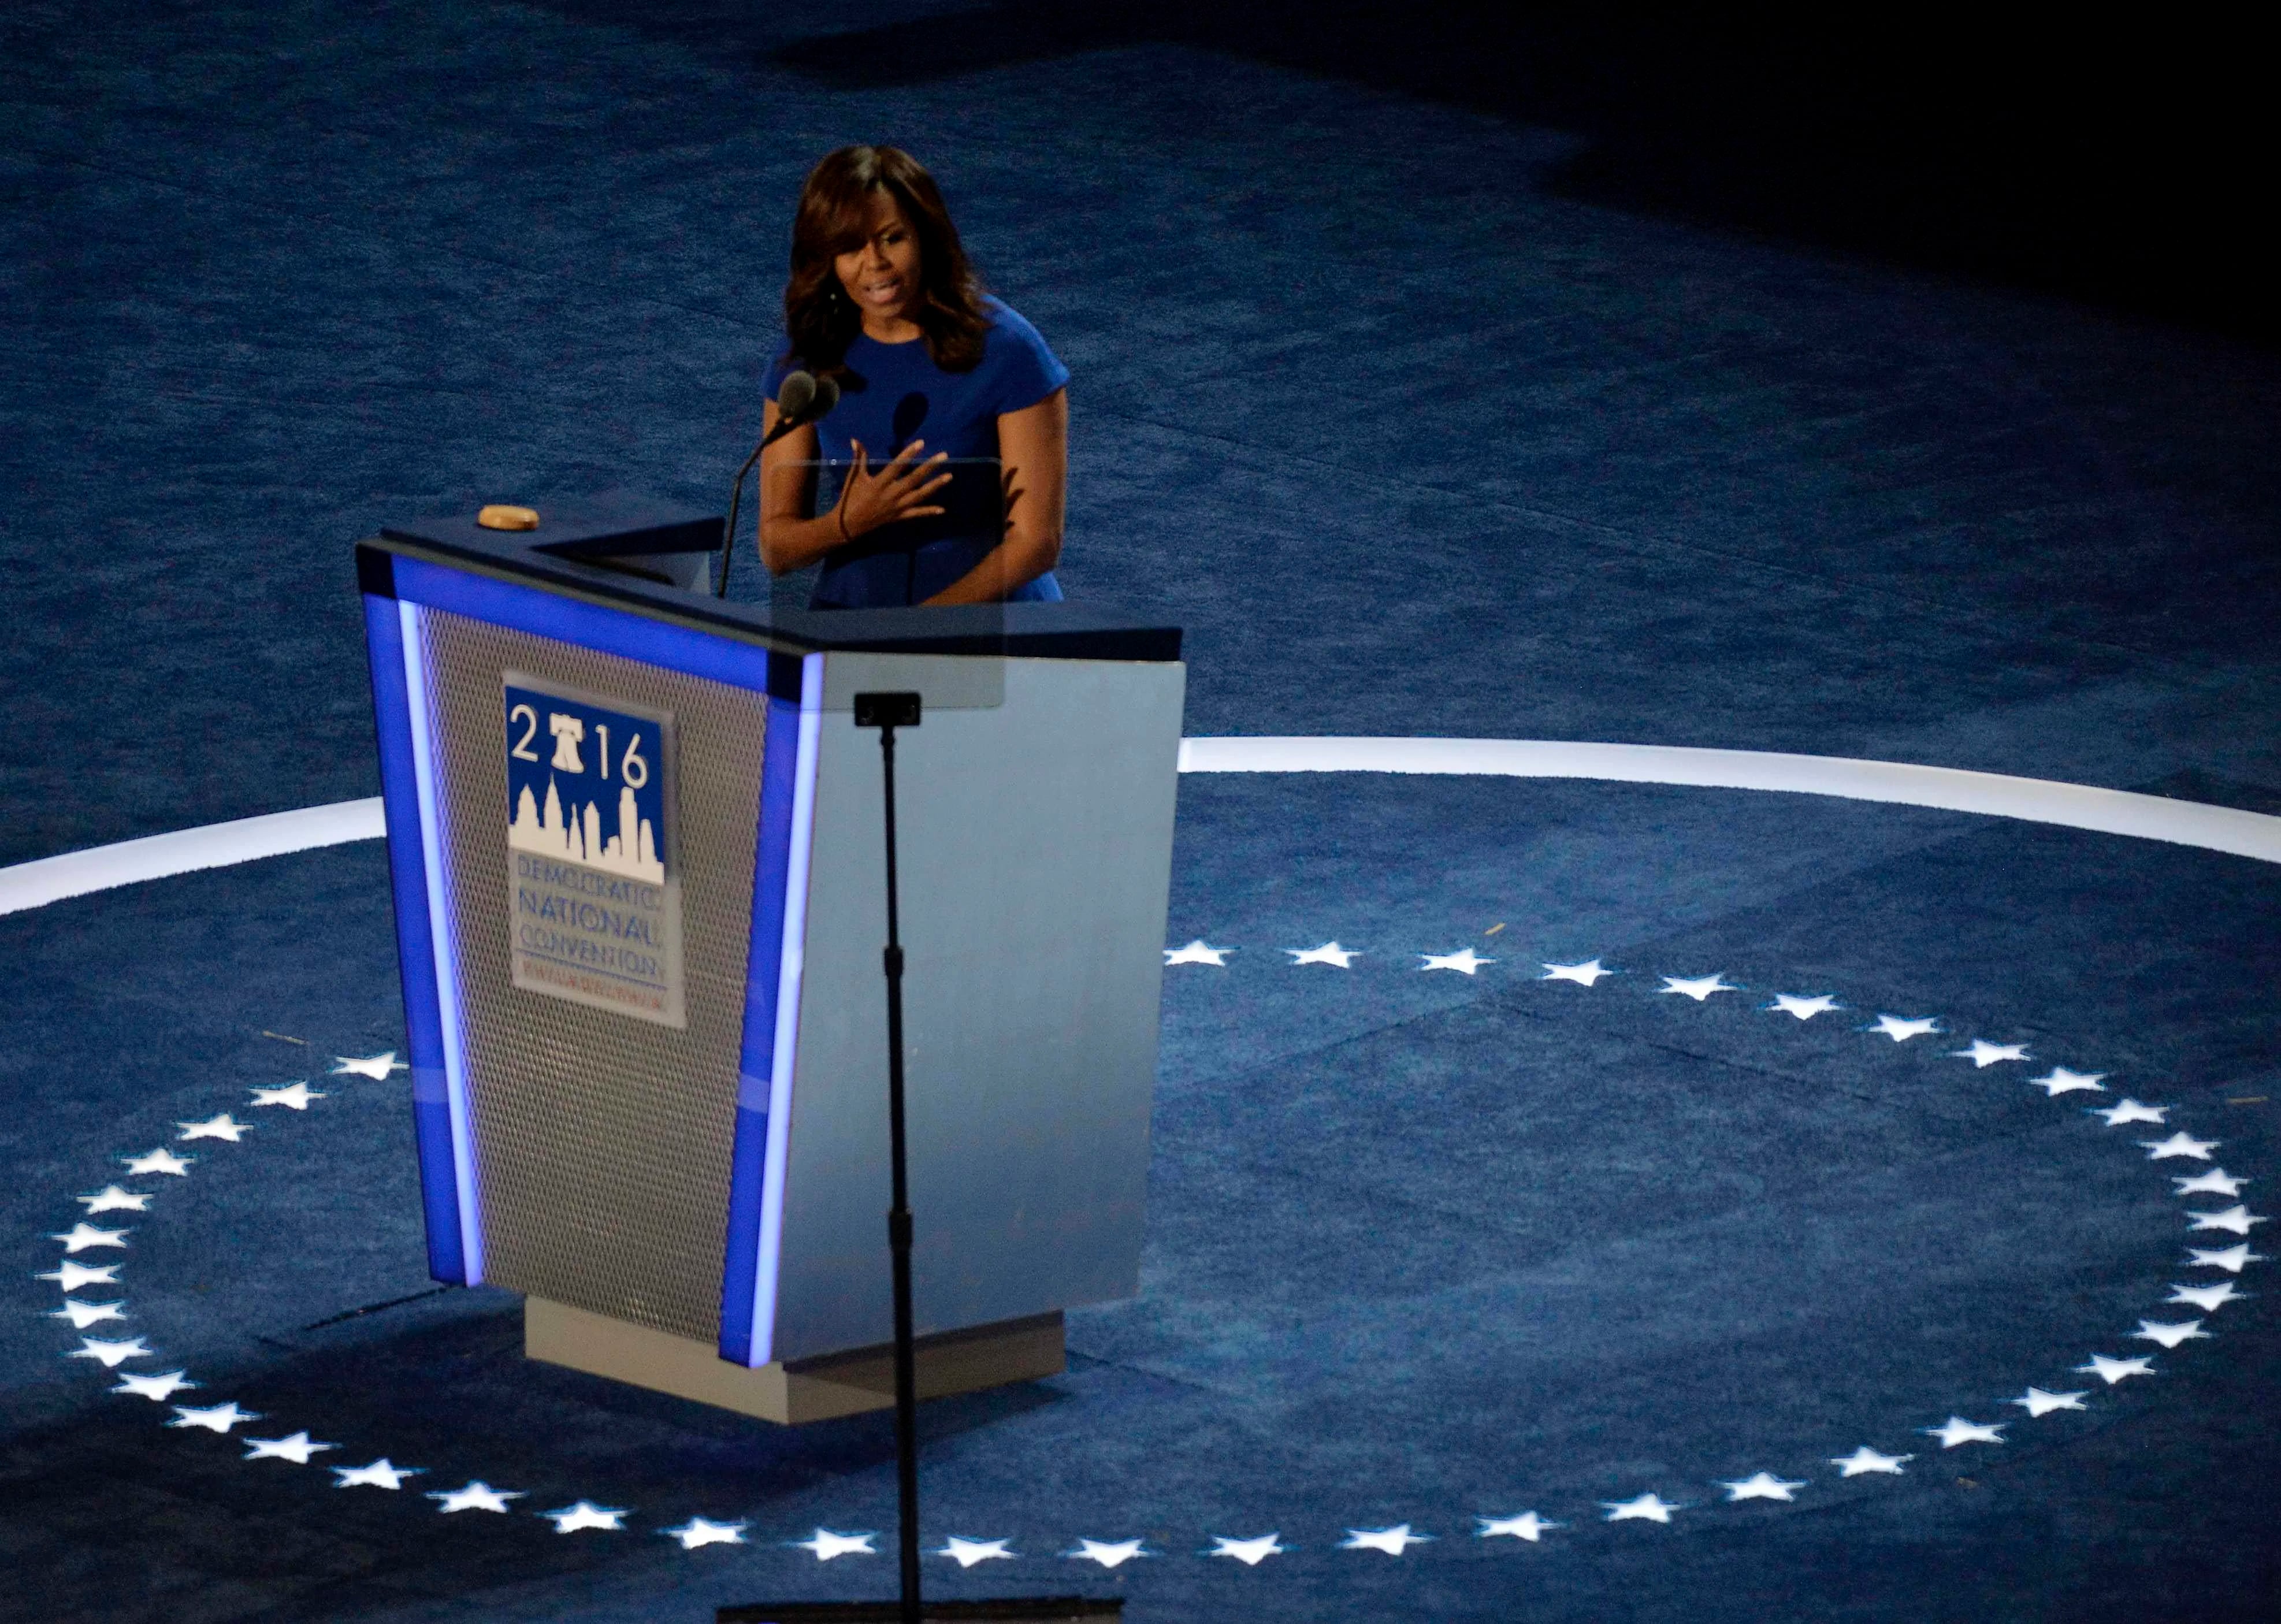 Con un discurso en el que prevaleció un tono íntimo pero con el carácter fuerte que caracteriza a Michelle Obama, la mujer que acompaña al presidente de los Estados Unidos no dudó en hacer una mención sobre el discurso lleno de odio que inunda los medios de comunicación en la actualidad (AFP)